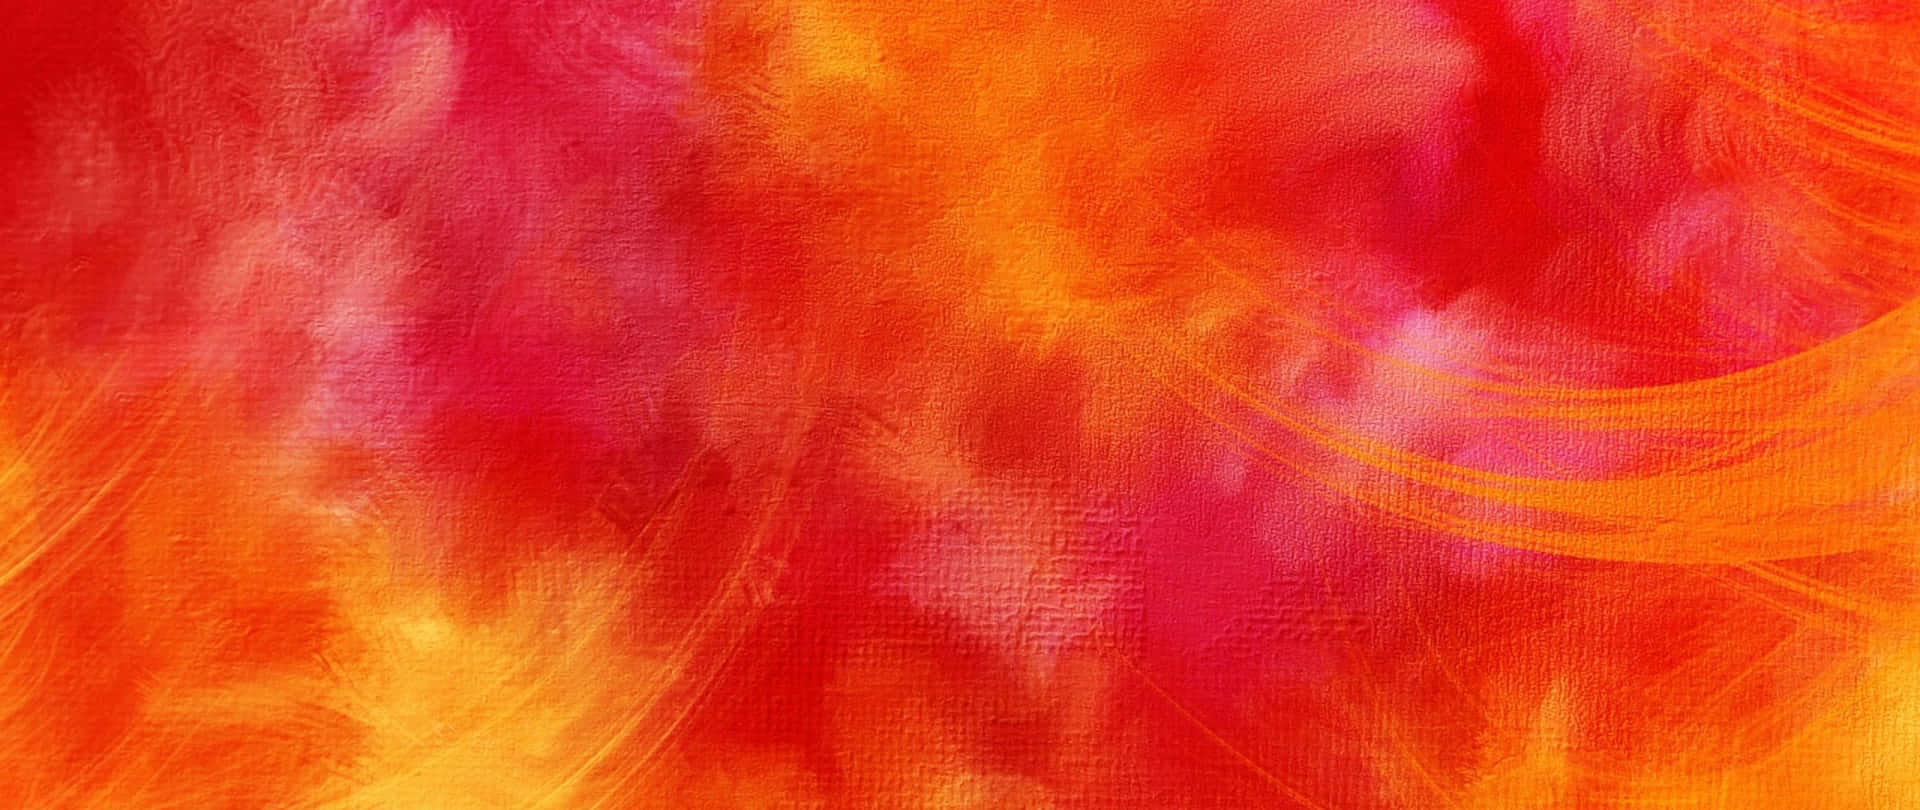 Nyd de smukke lyserøde solnedgang Wallpaper